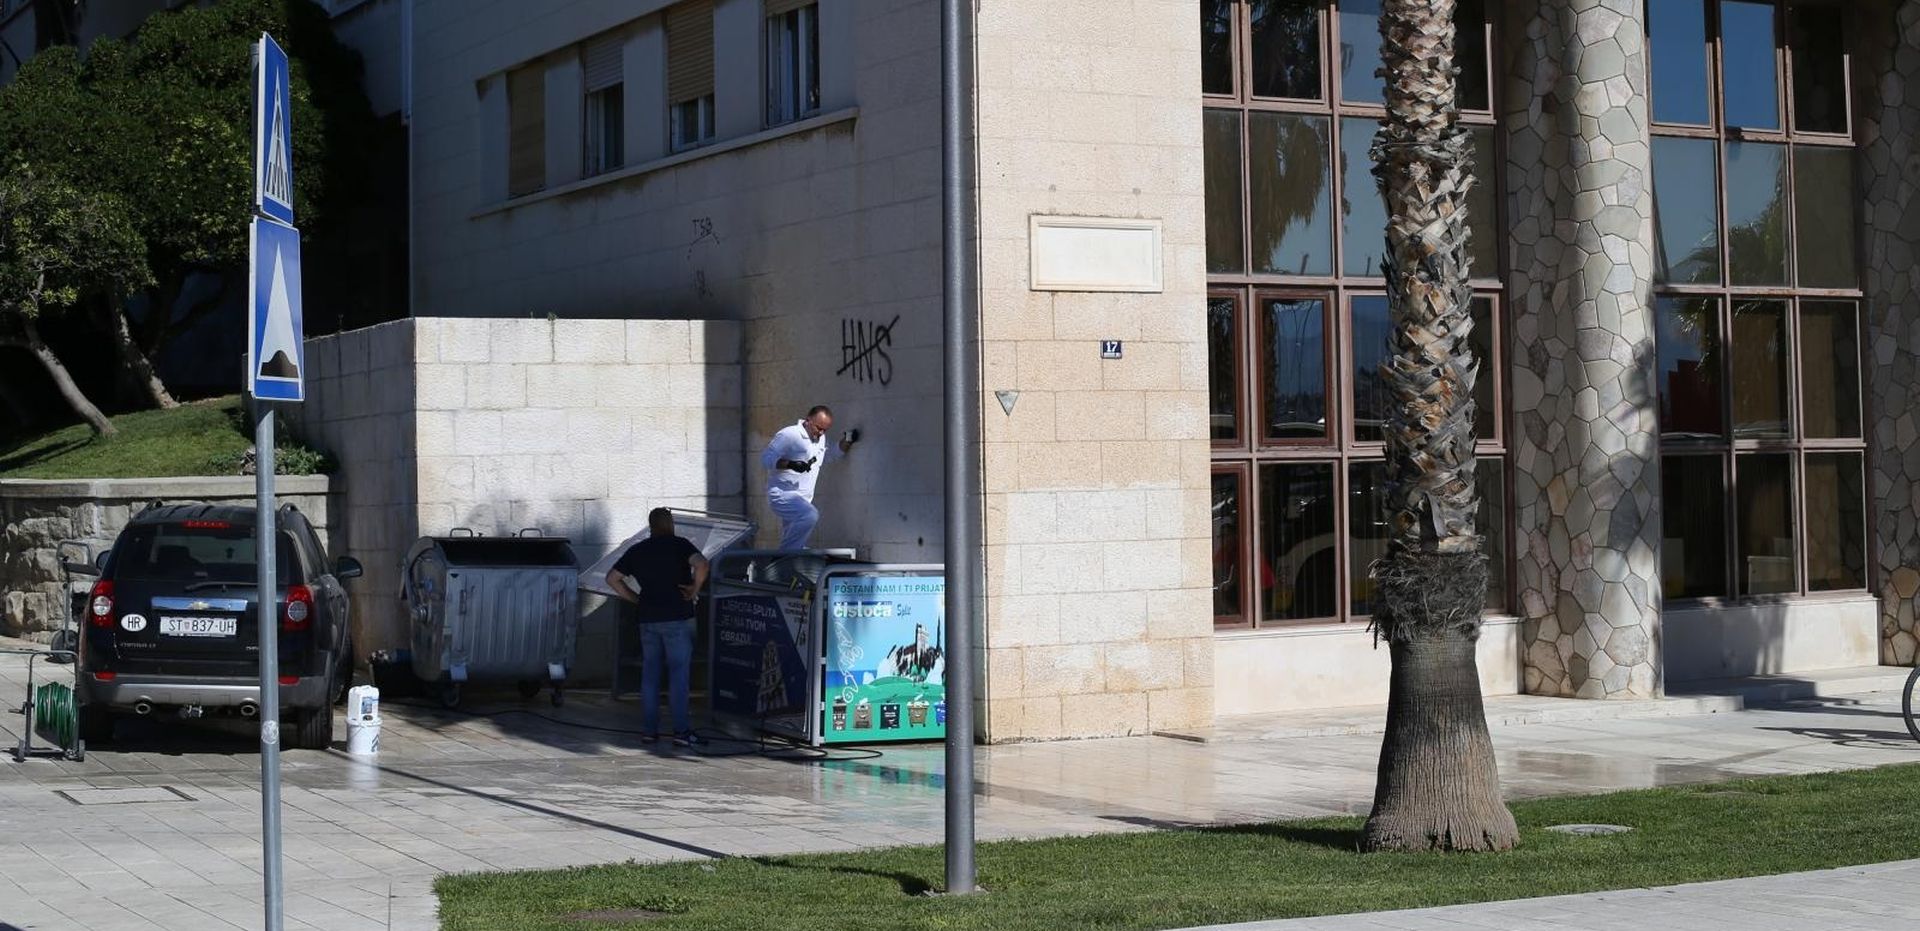 04.09.2020.,Split - Uklanjaju se grafiti protiv gradonacelnika Andre Krstulovica Opare i HNS-a koji su osvanuli na zgradi Gradskog poglavarstva.
Photo:Ivo Cagalj/PIXSELL